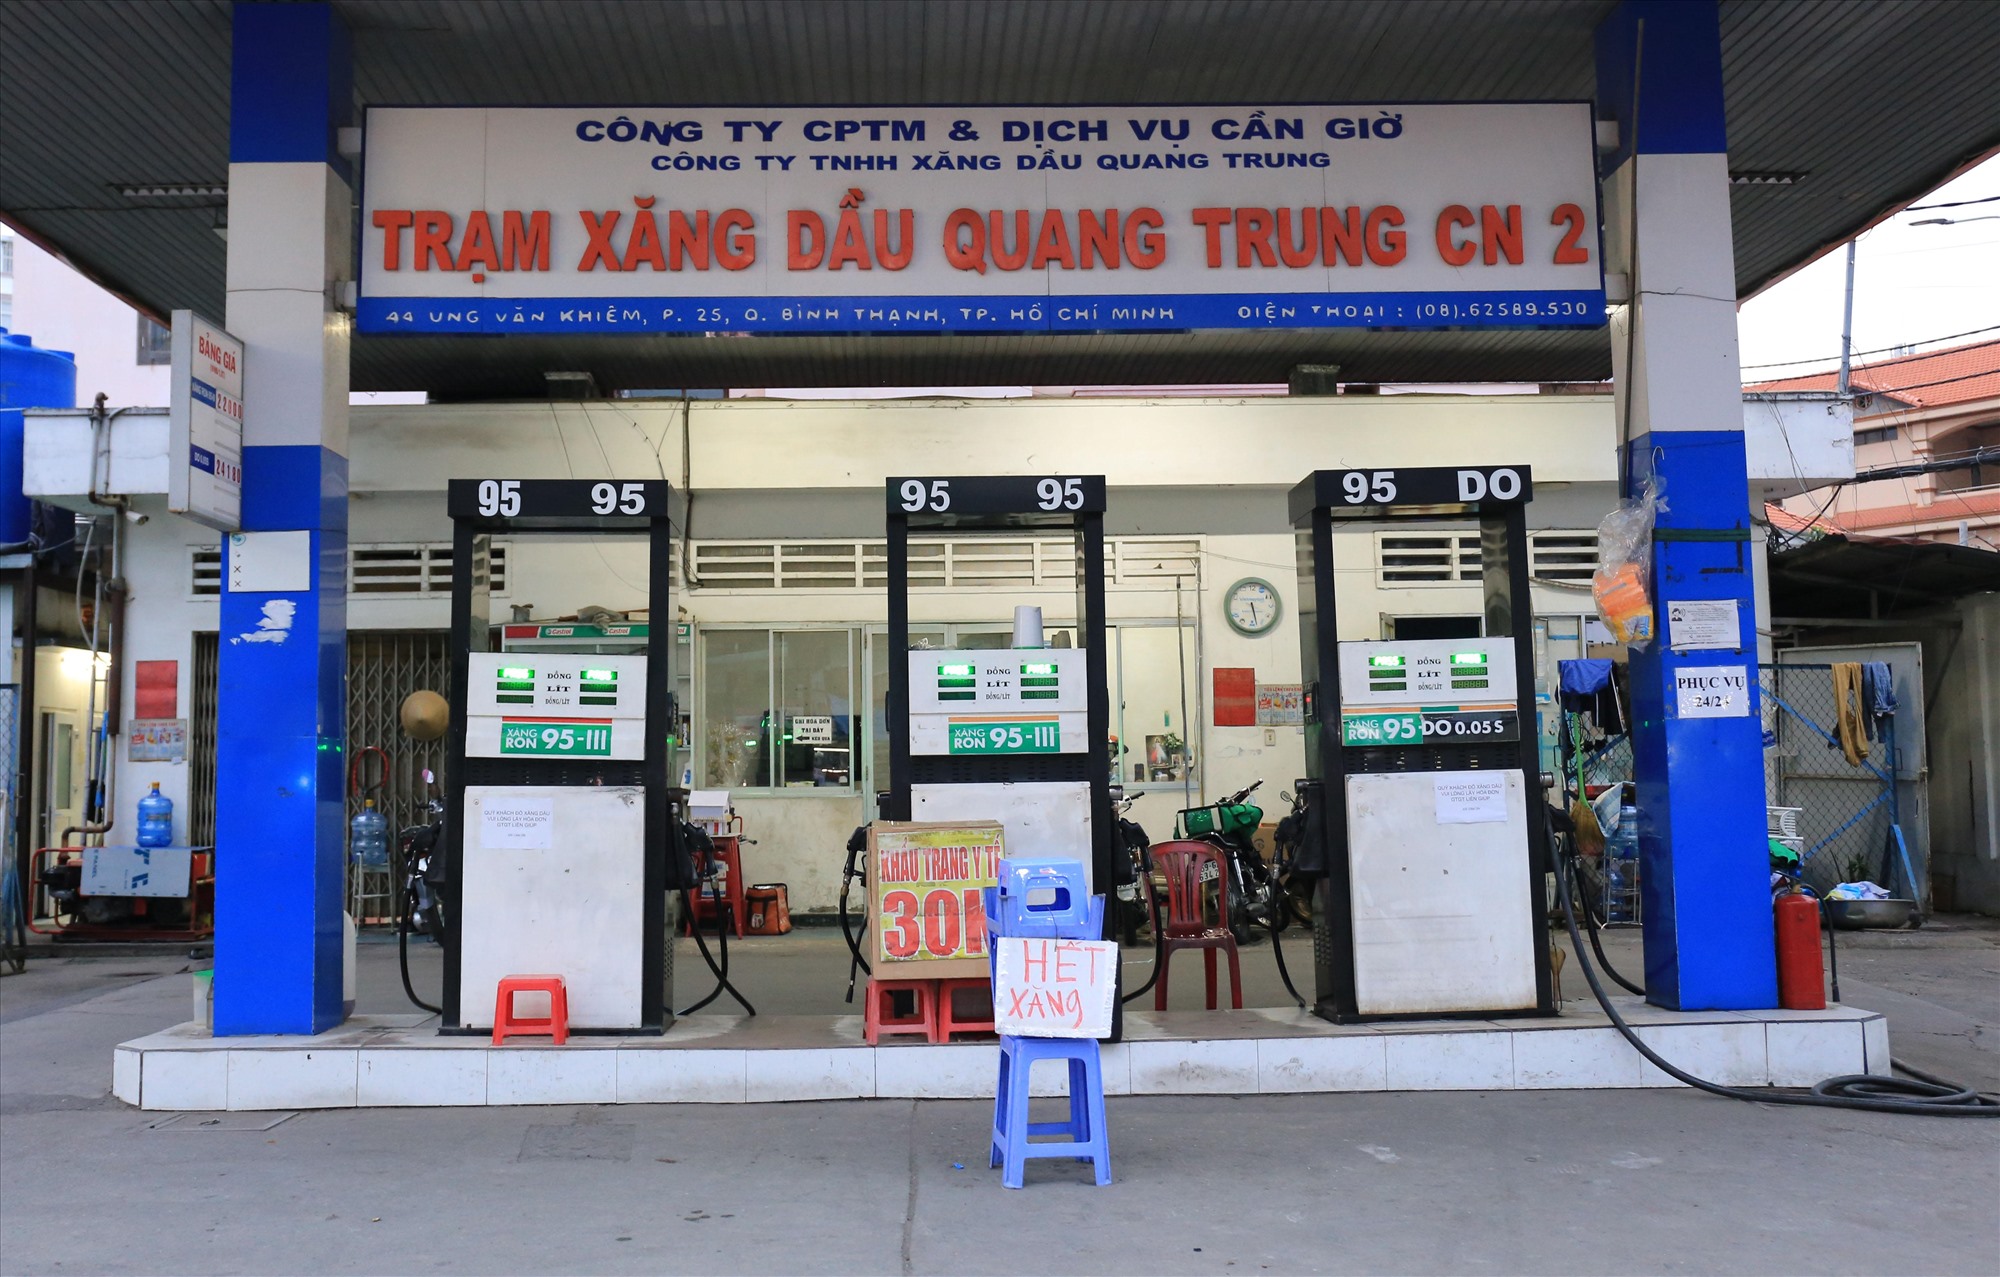 Cũng ở gần đó, Trạm xăng dầu Quang Trung chi nhánh 2 cũng hết xăng để bán. Nhân viên tại đây cho hay, tối nay xe bồn sẽ về, nhưng số lượng không bao nhiêu vì phải chia ra nhiều chi nhánh.